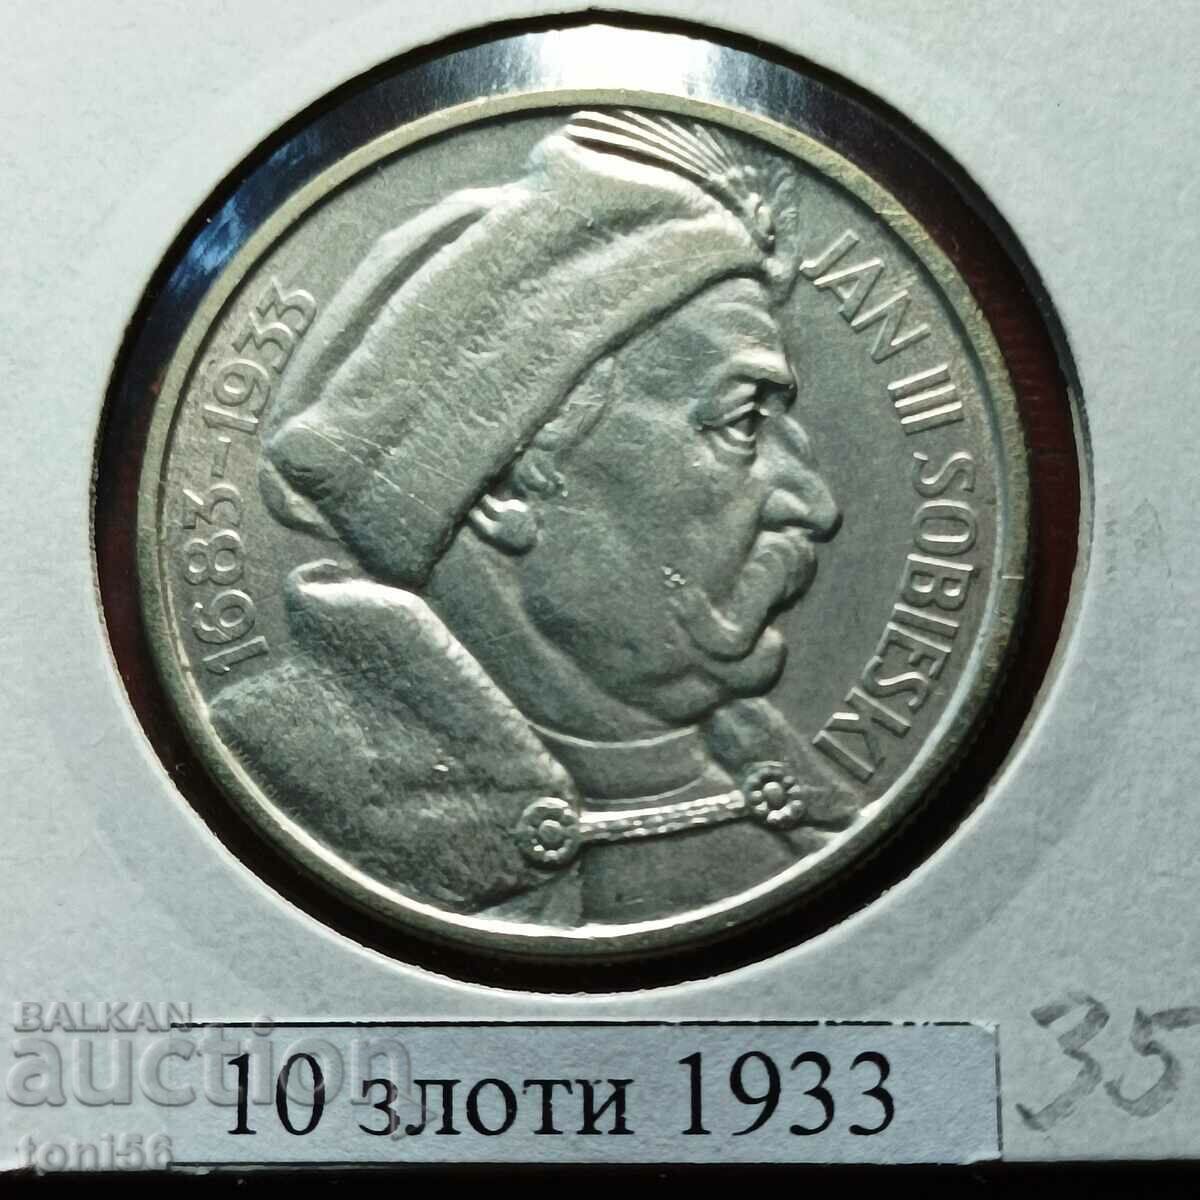 Poland 10 zlotys 1933 - silver, very rare